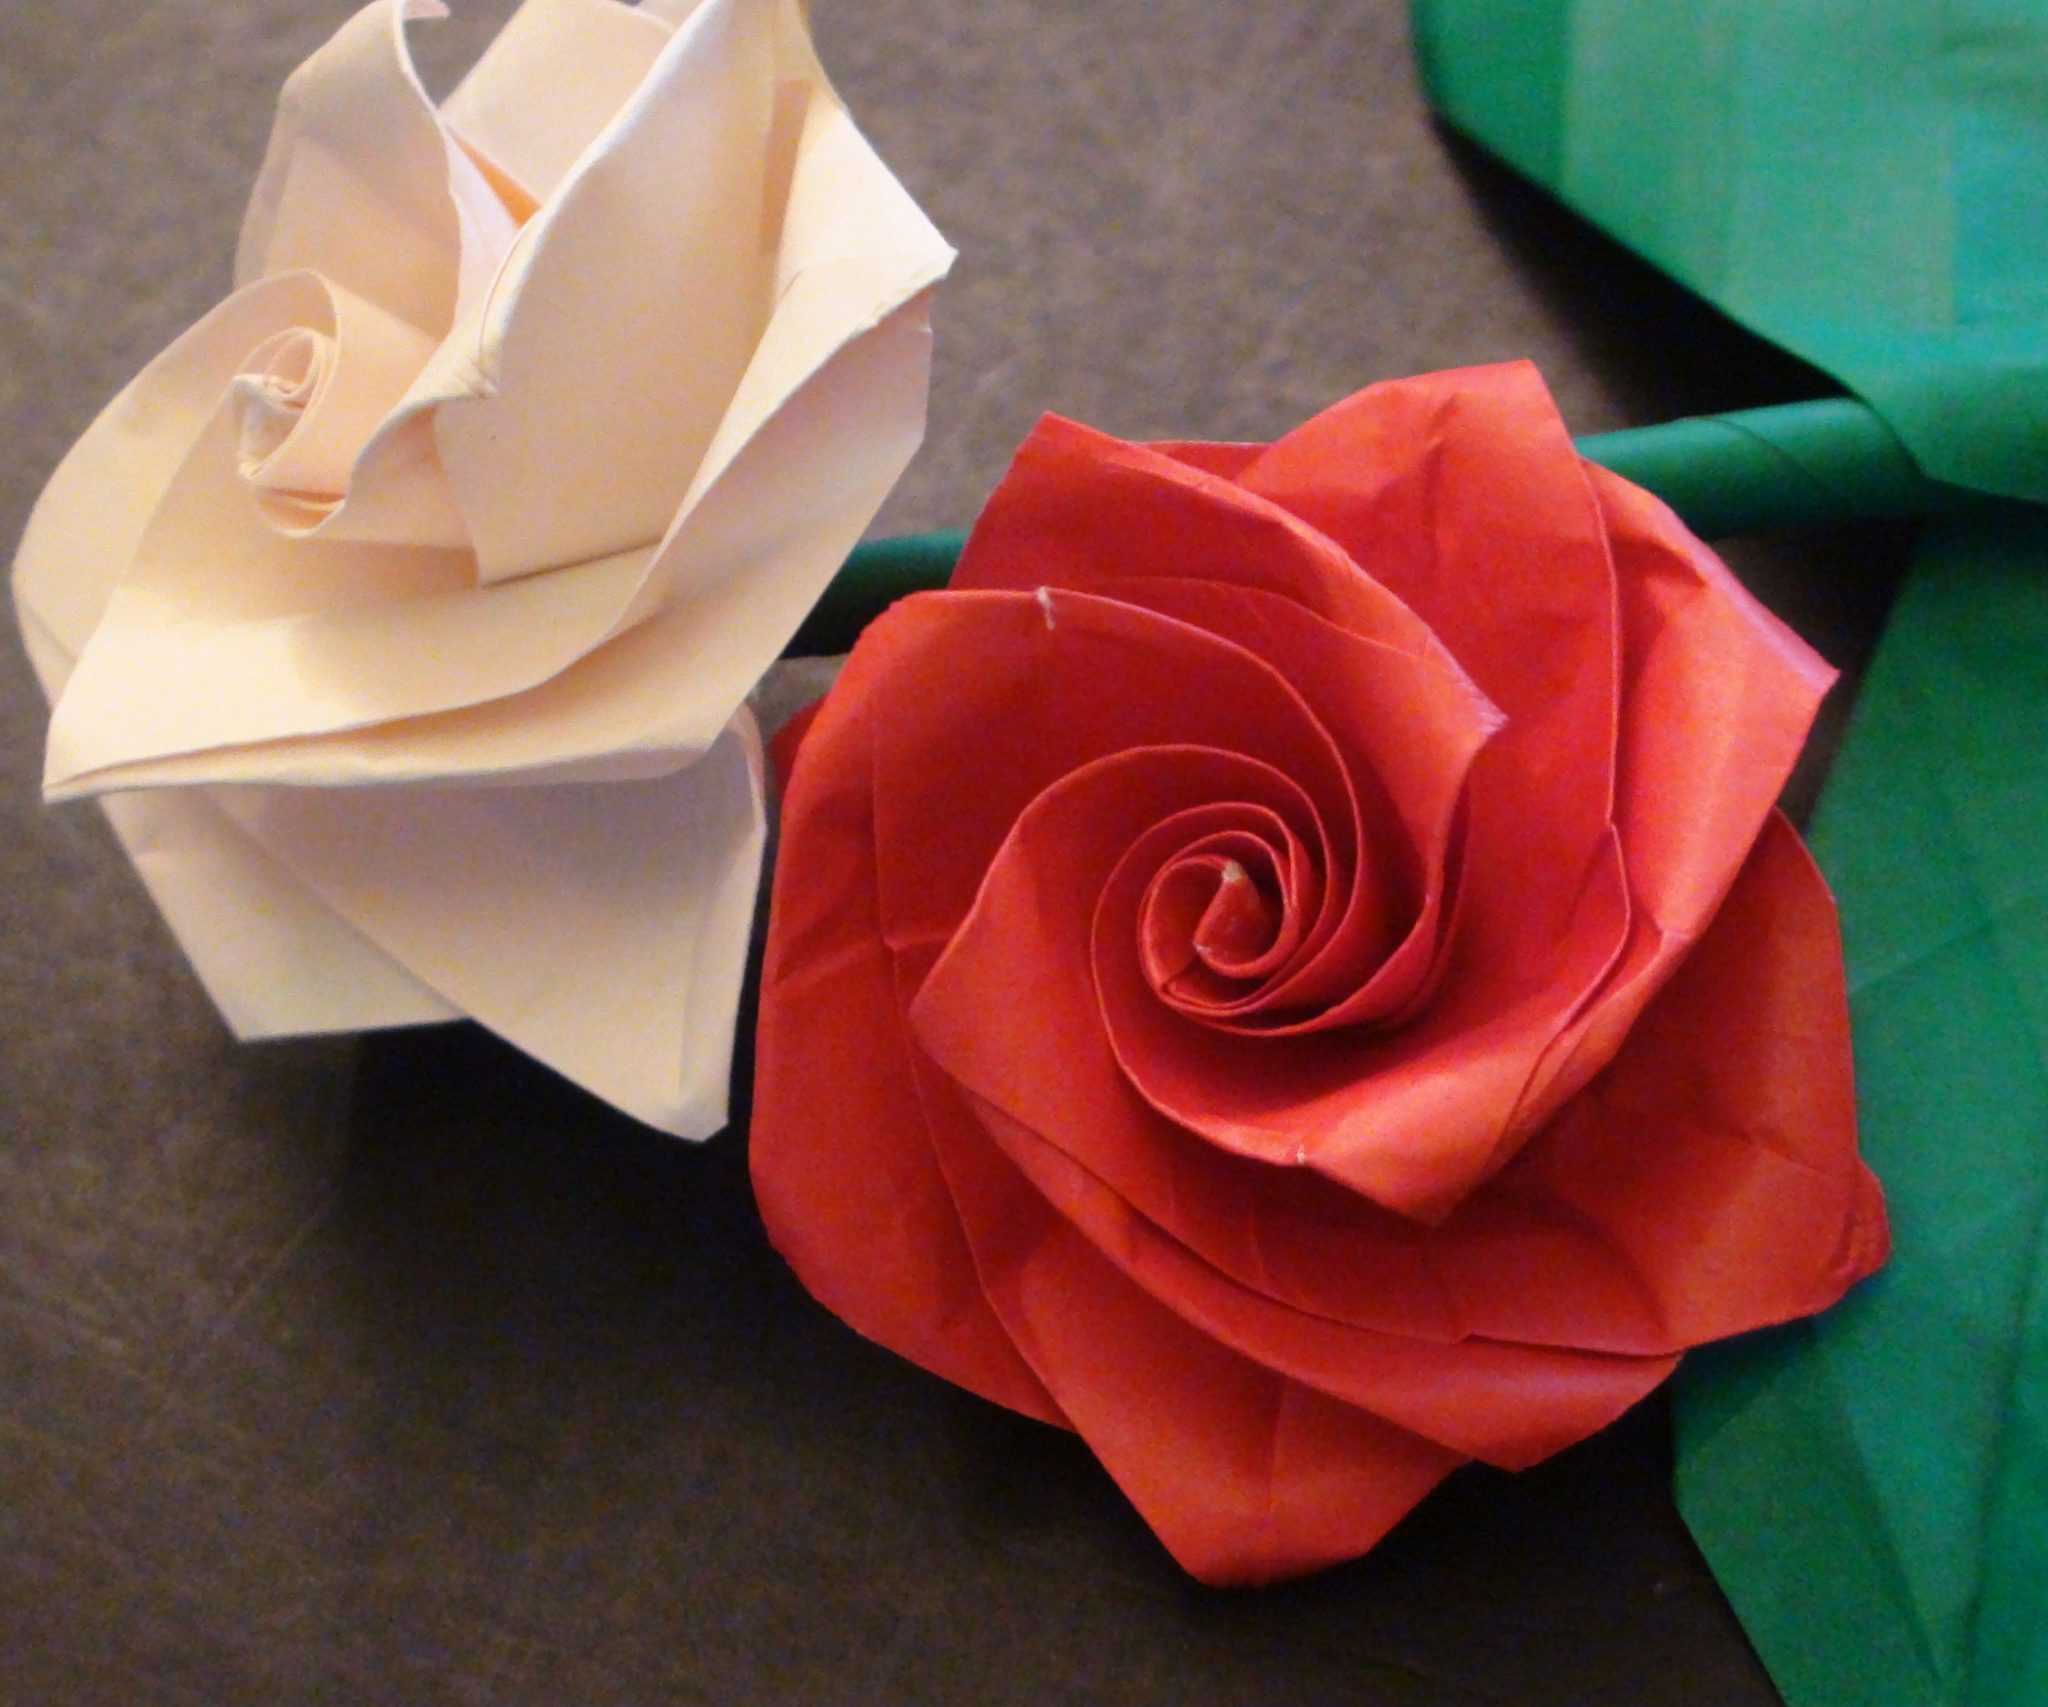 Оригами из бумаги – увлекательное занятия для детей и взрослых Все операции выполняются своими руками поэтапно согласно схемам Из бумаги можно сложить цветы коробочку животных новогодних персонажей кораблик и многое другое